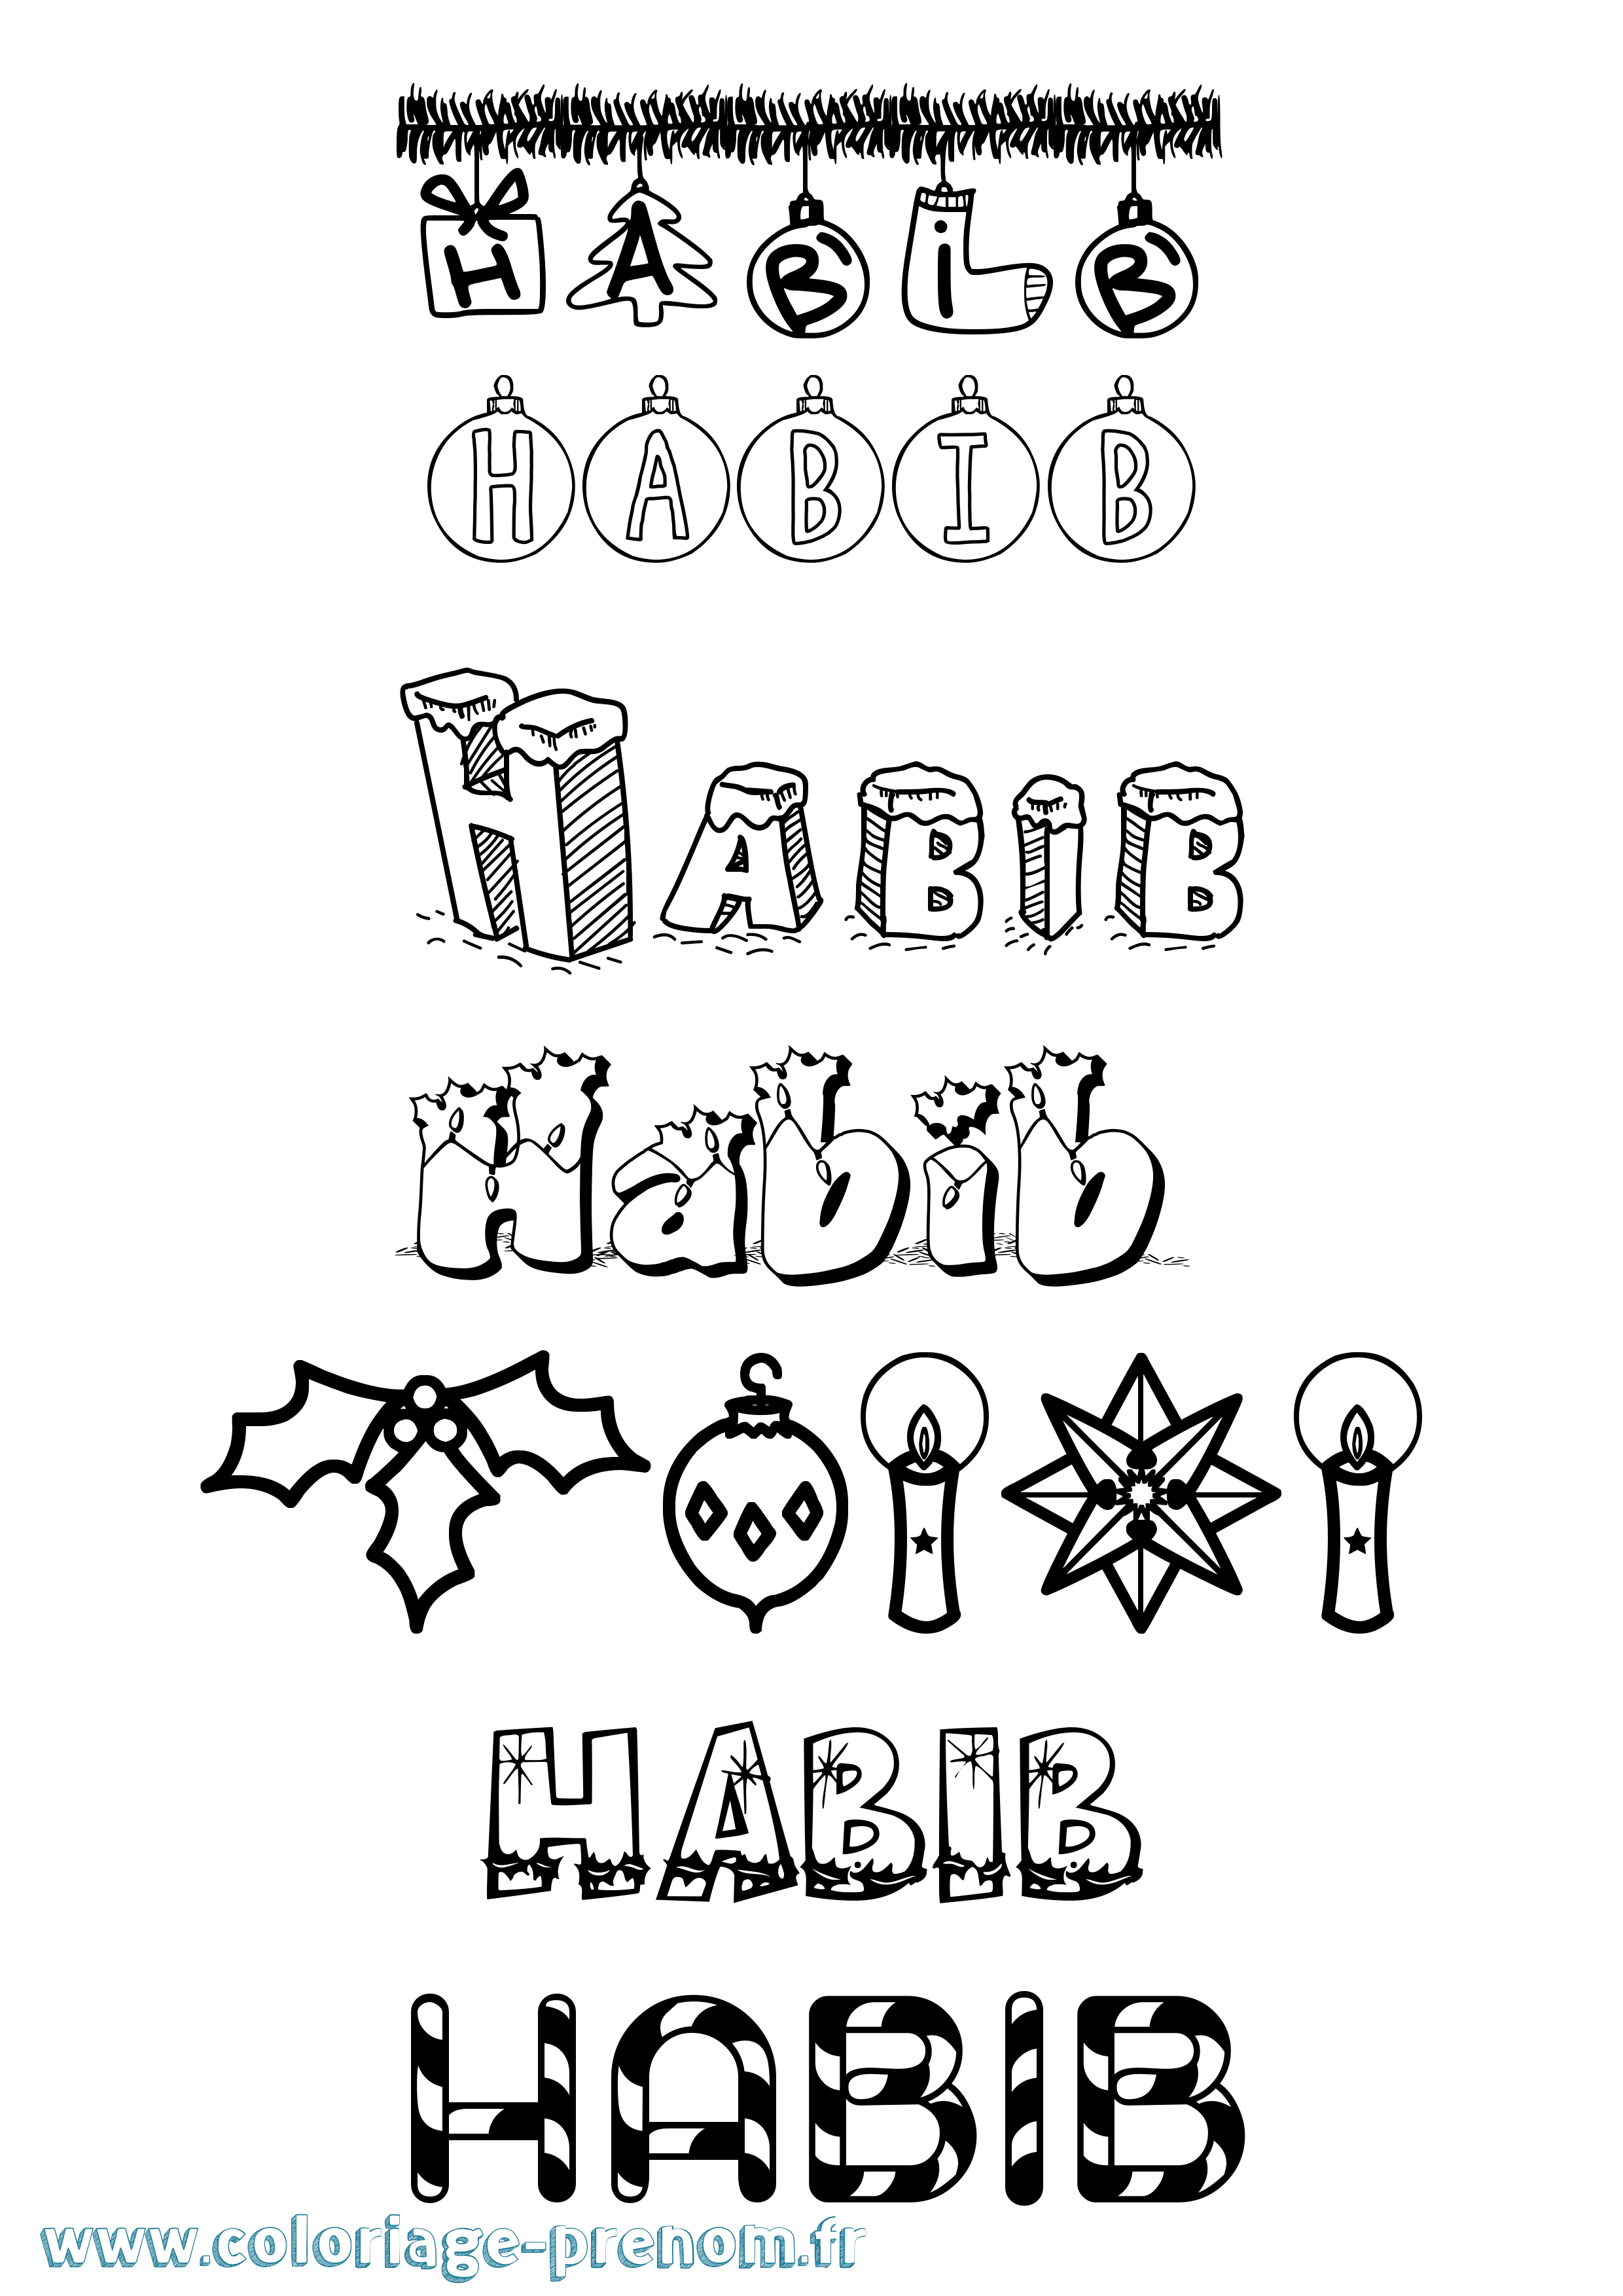 Coloriage prénom Habib